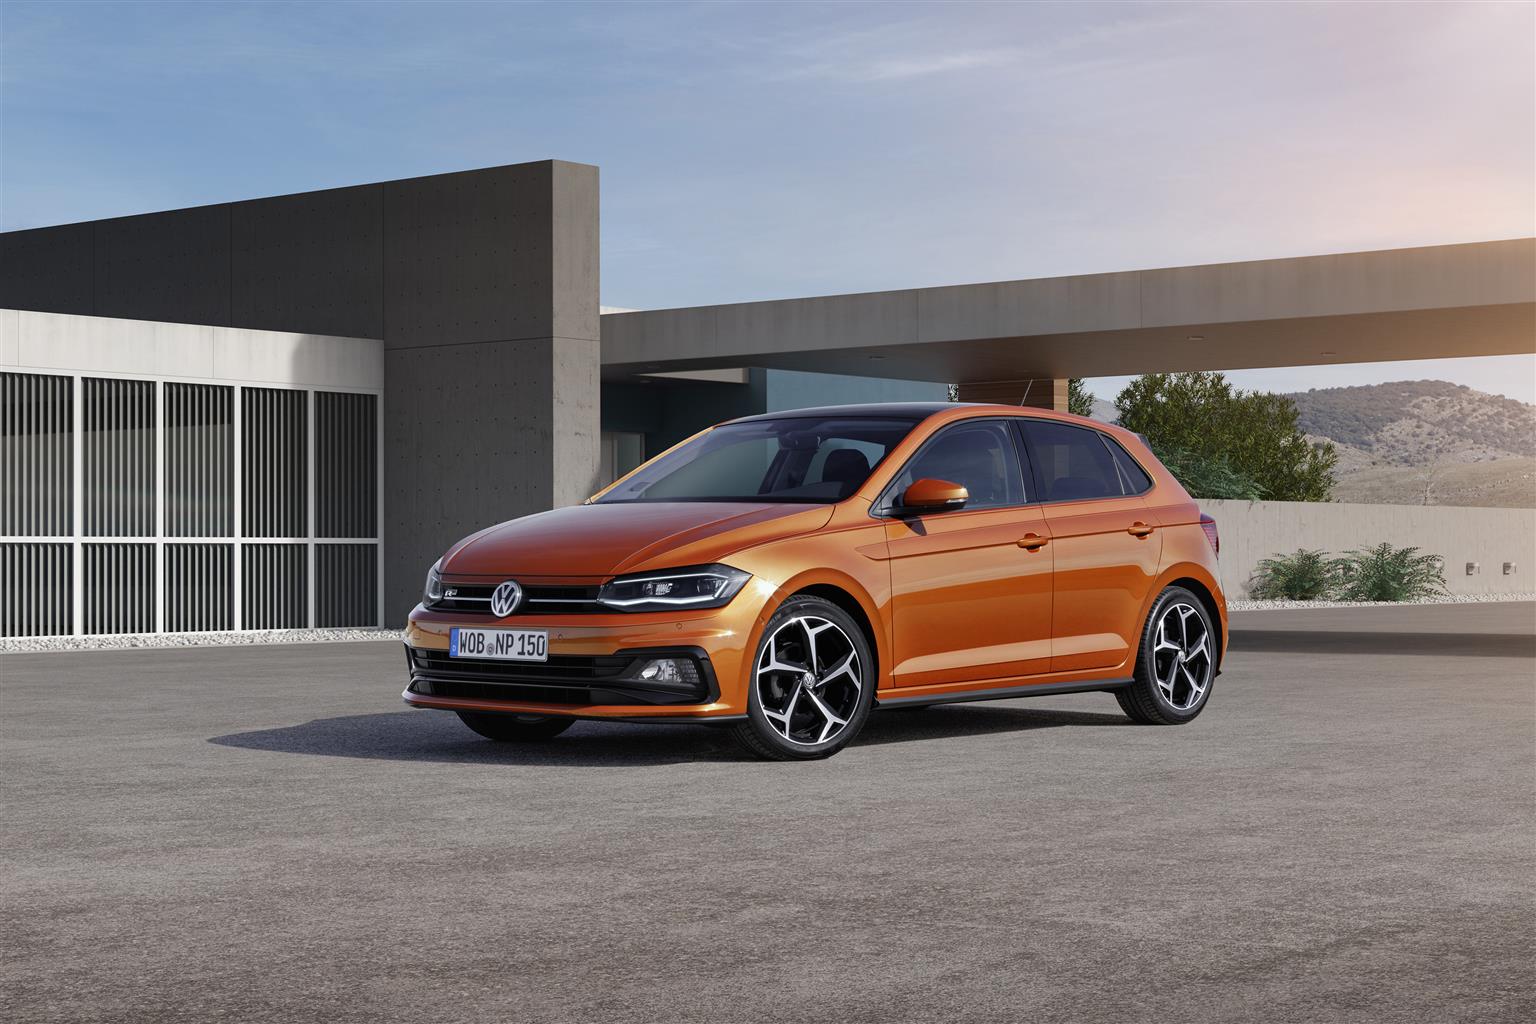 Le 5 cose da sapere sulla nuova Volkswagen Polo 2017